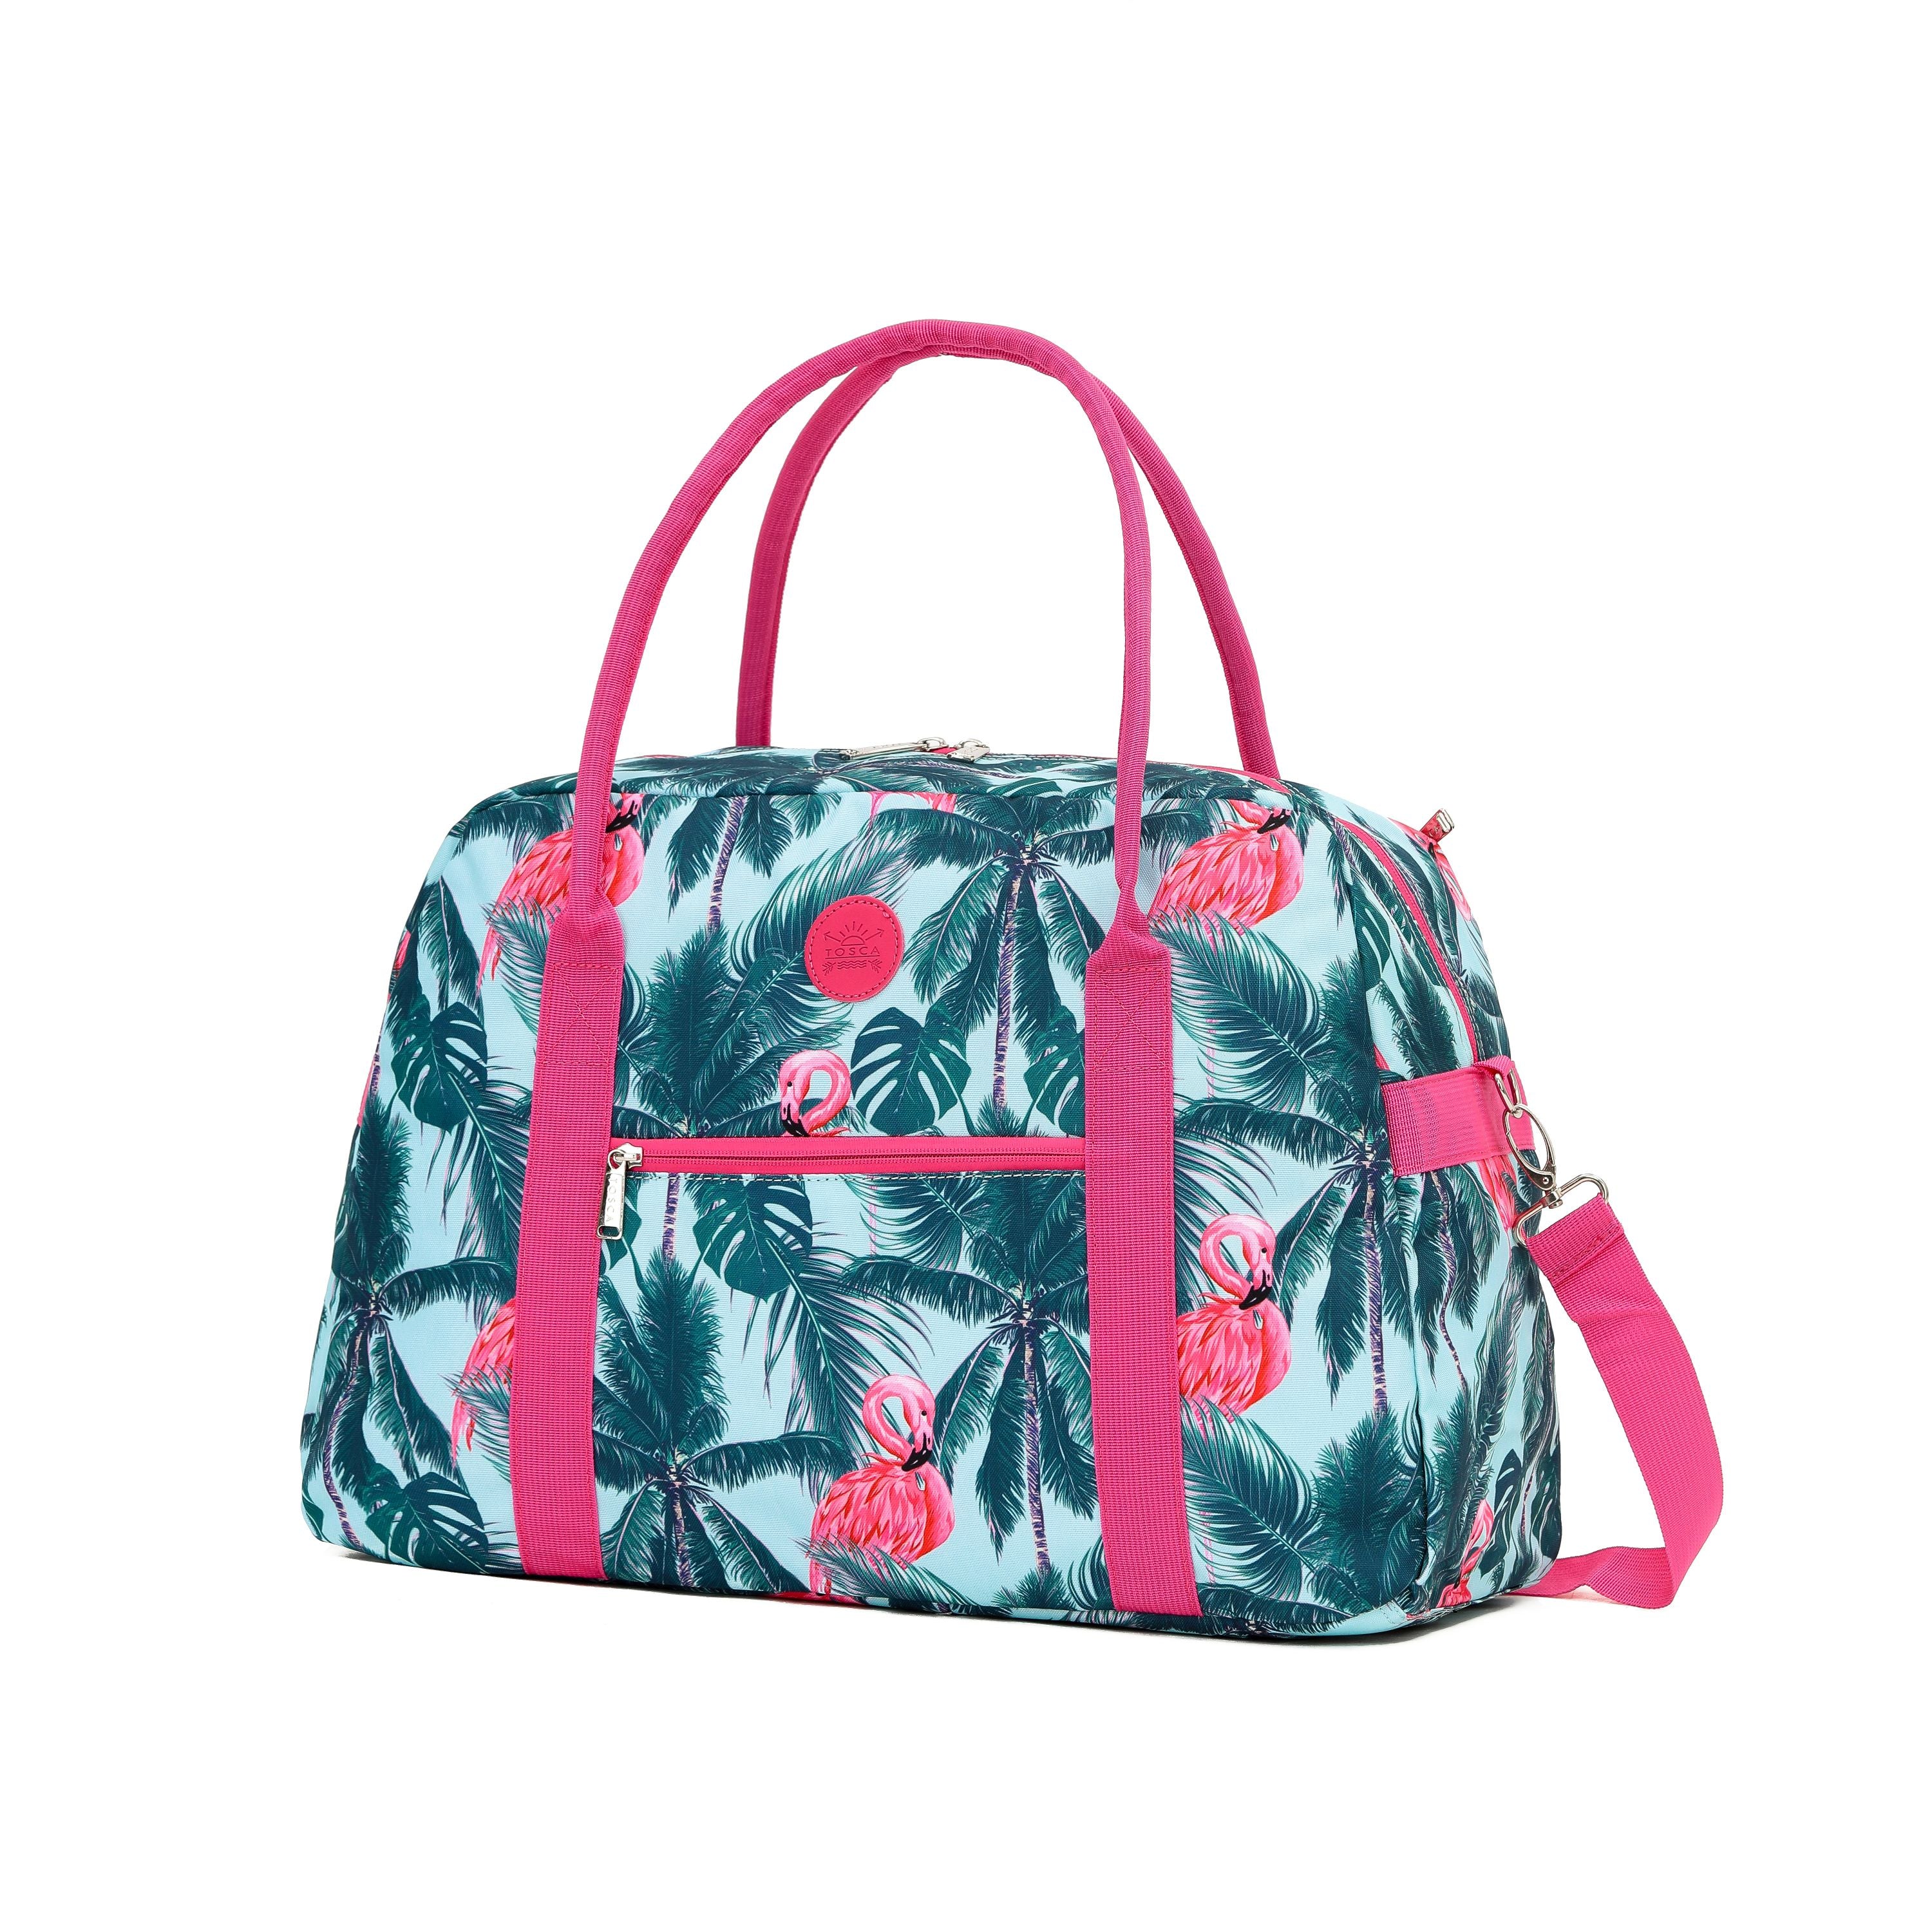 Tosca - TCA935 Fashion Tote/Duffle Bag - Flamingo-1